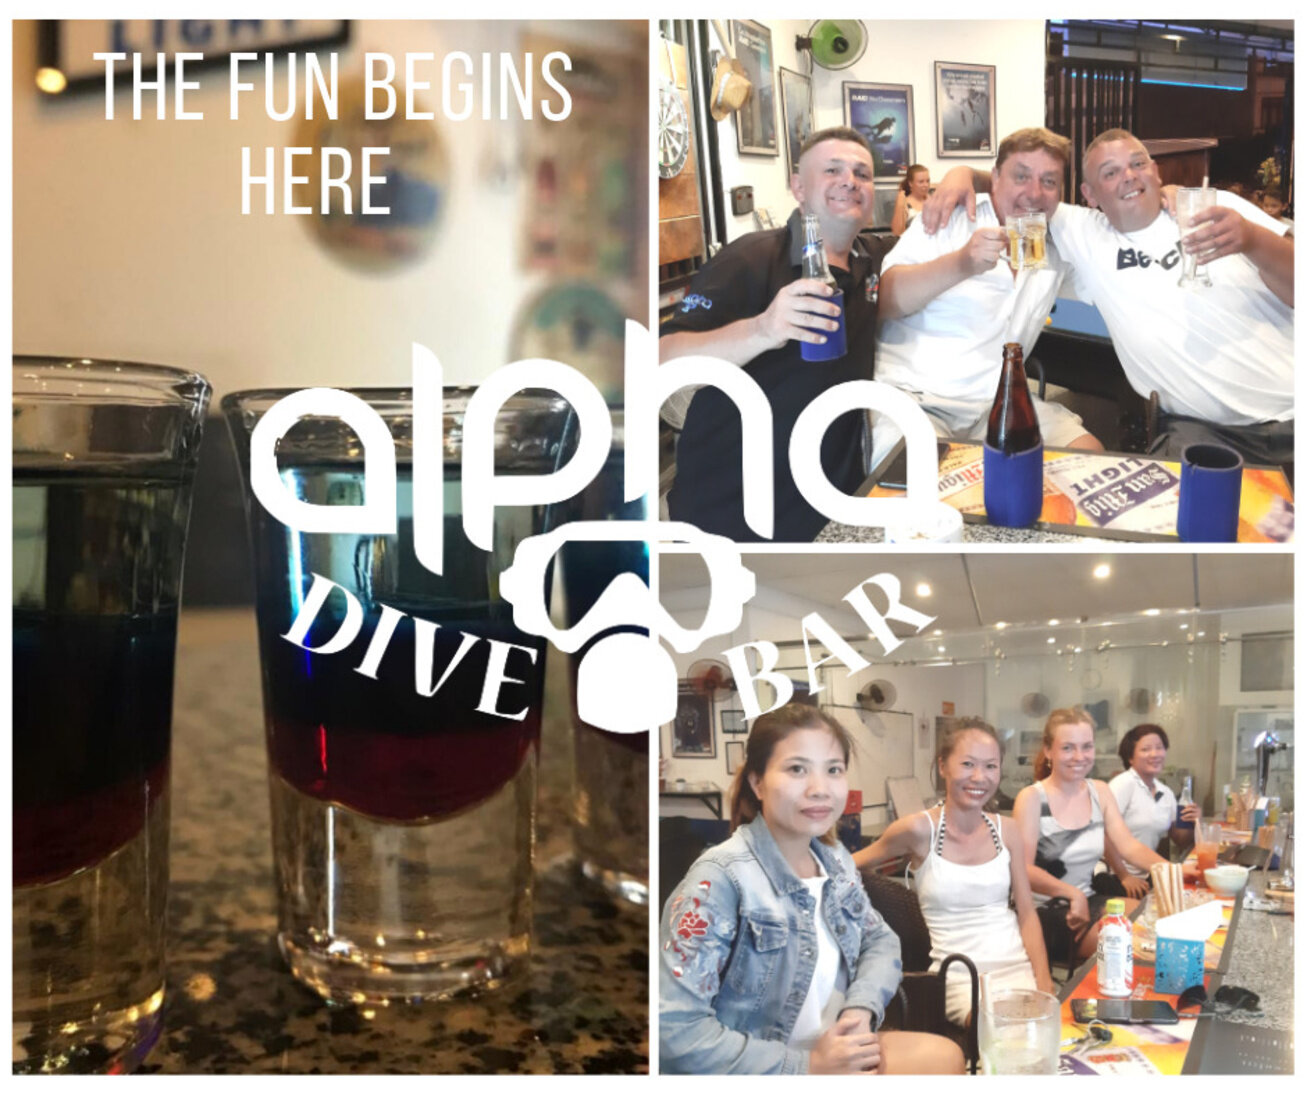 Come and join us at Alpha dive bar #fun #nhatrang #vietnam #beer #shot #divealphavietnam #divealphabar #ilovealphadivebar